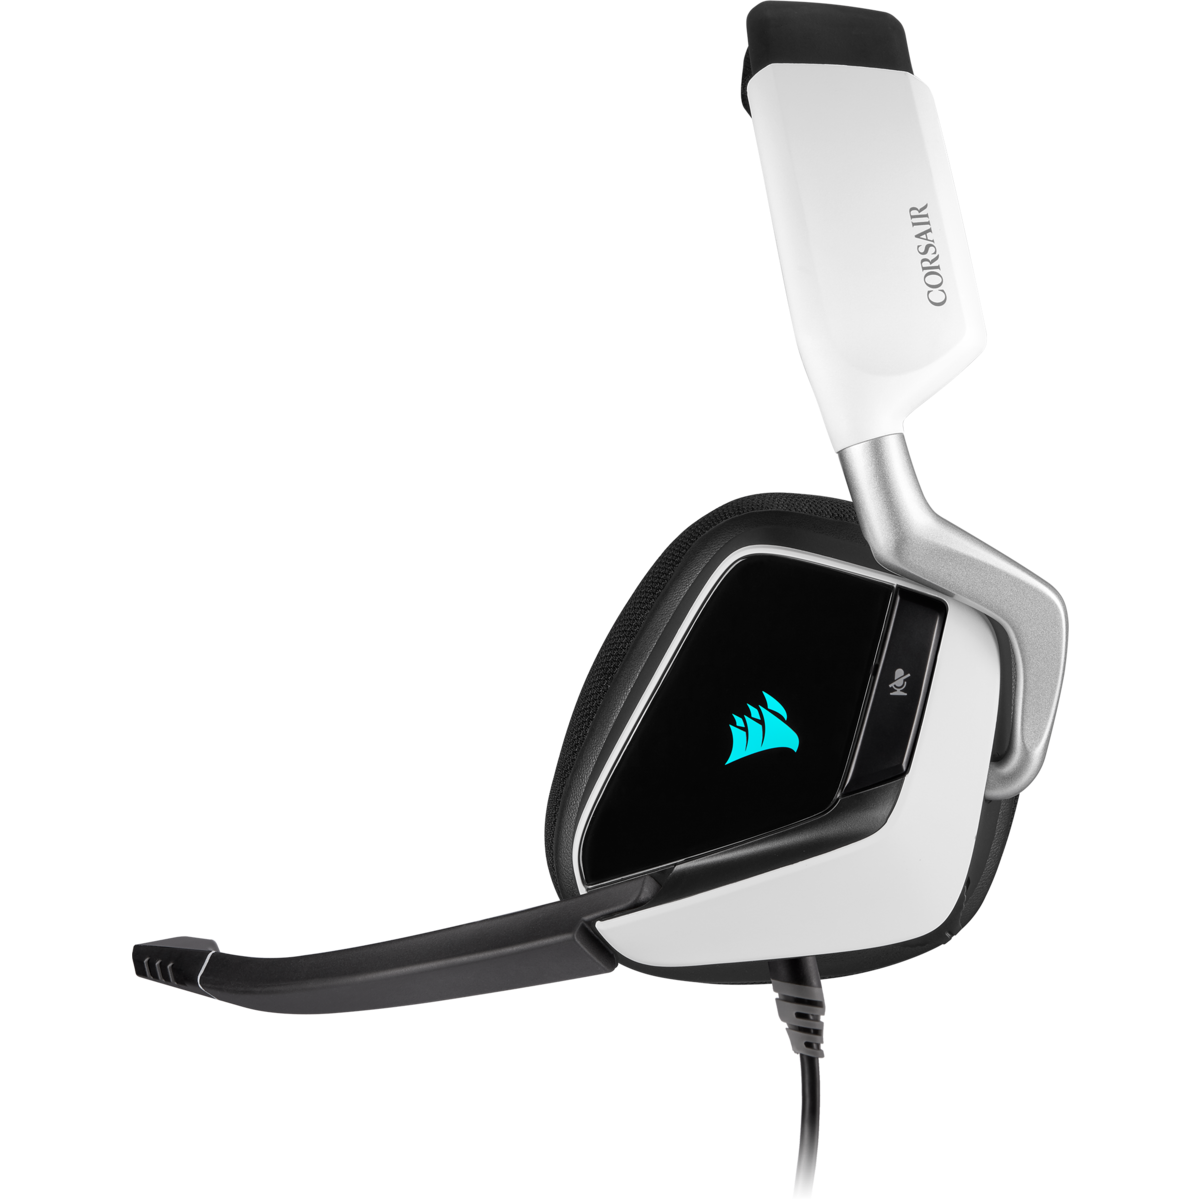 Headset Gamer Corsair Void RGB Elite, 7.1 Surround, White, CA-9011204-NA